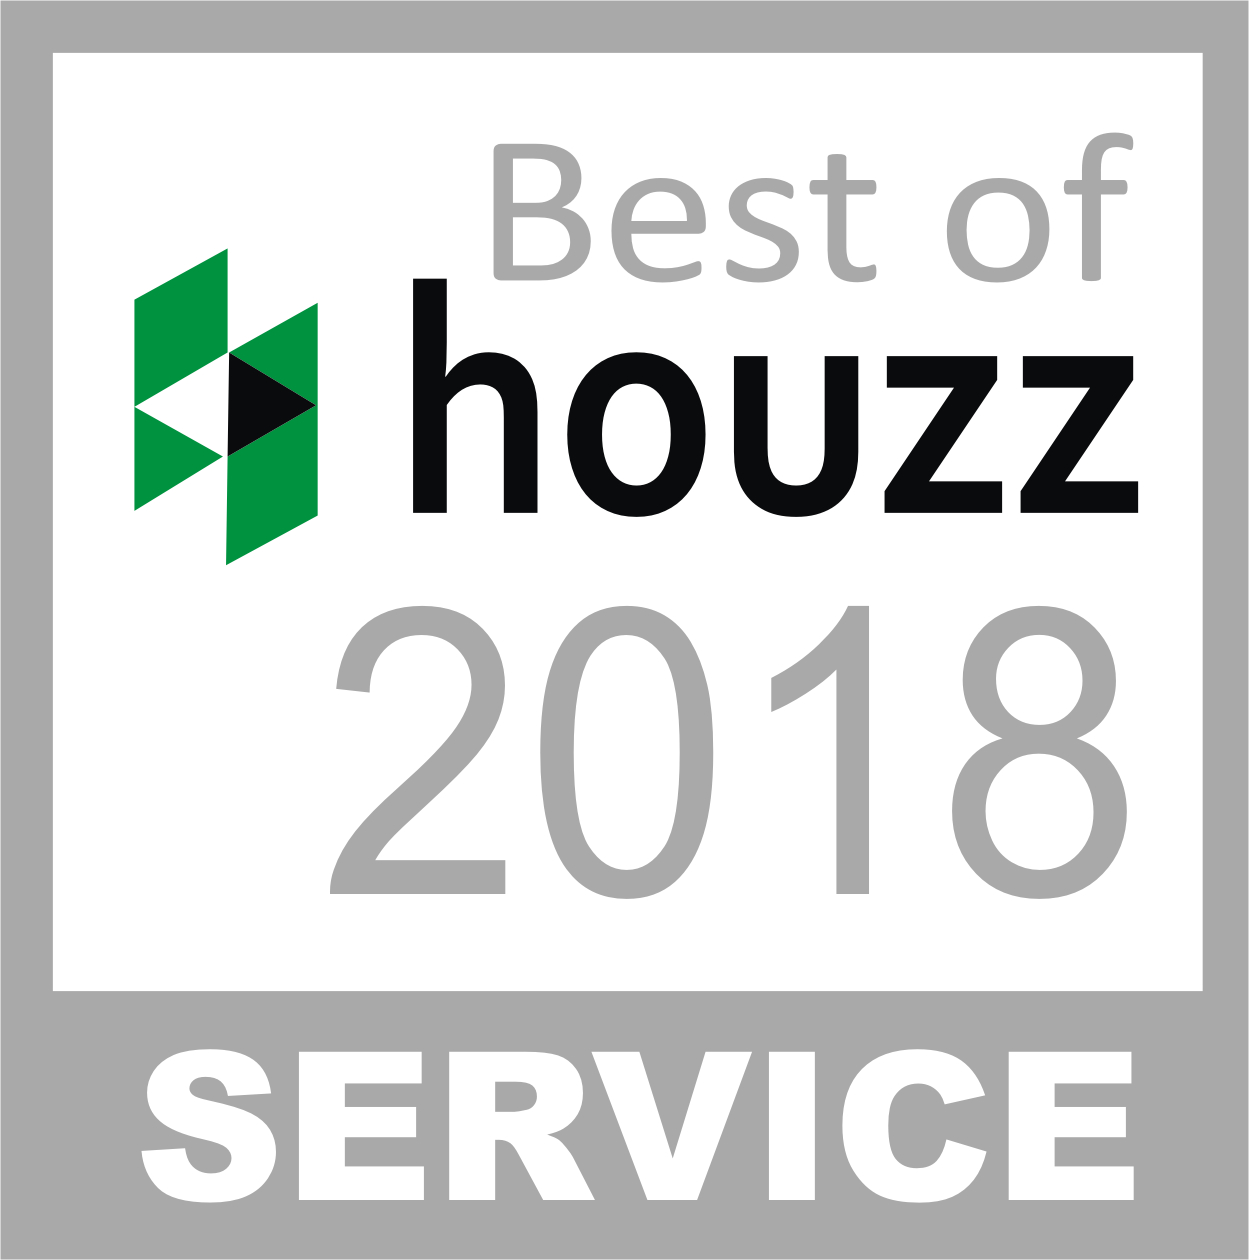 Best of Houzz 2018 Interior Design Award